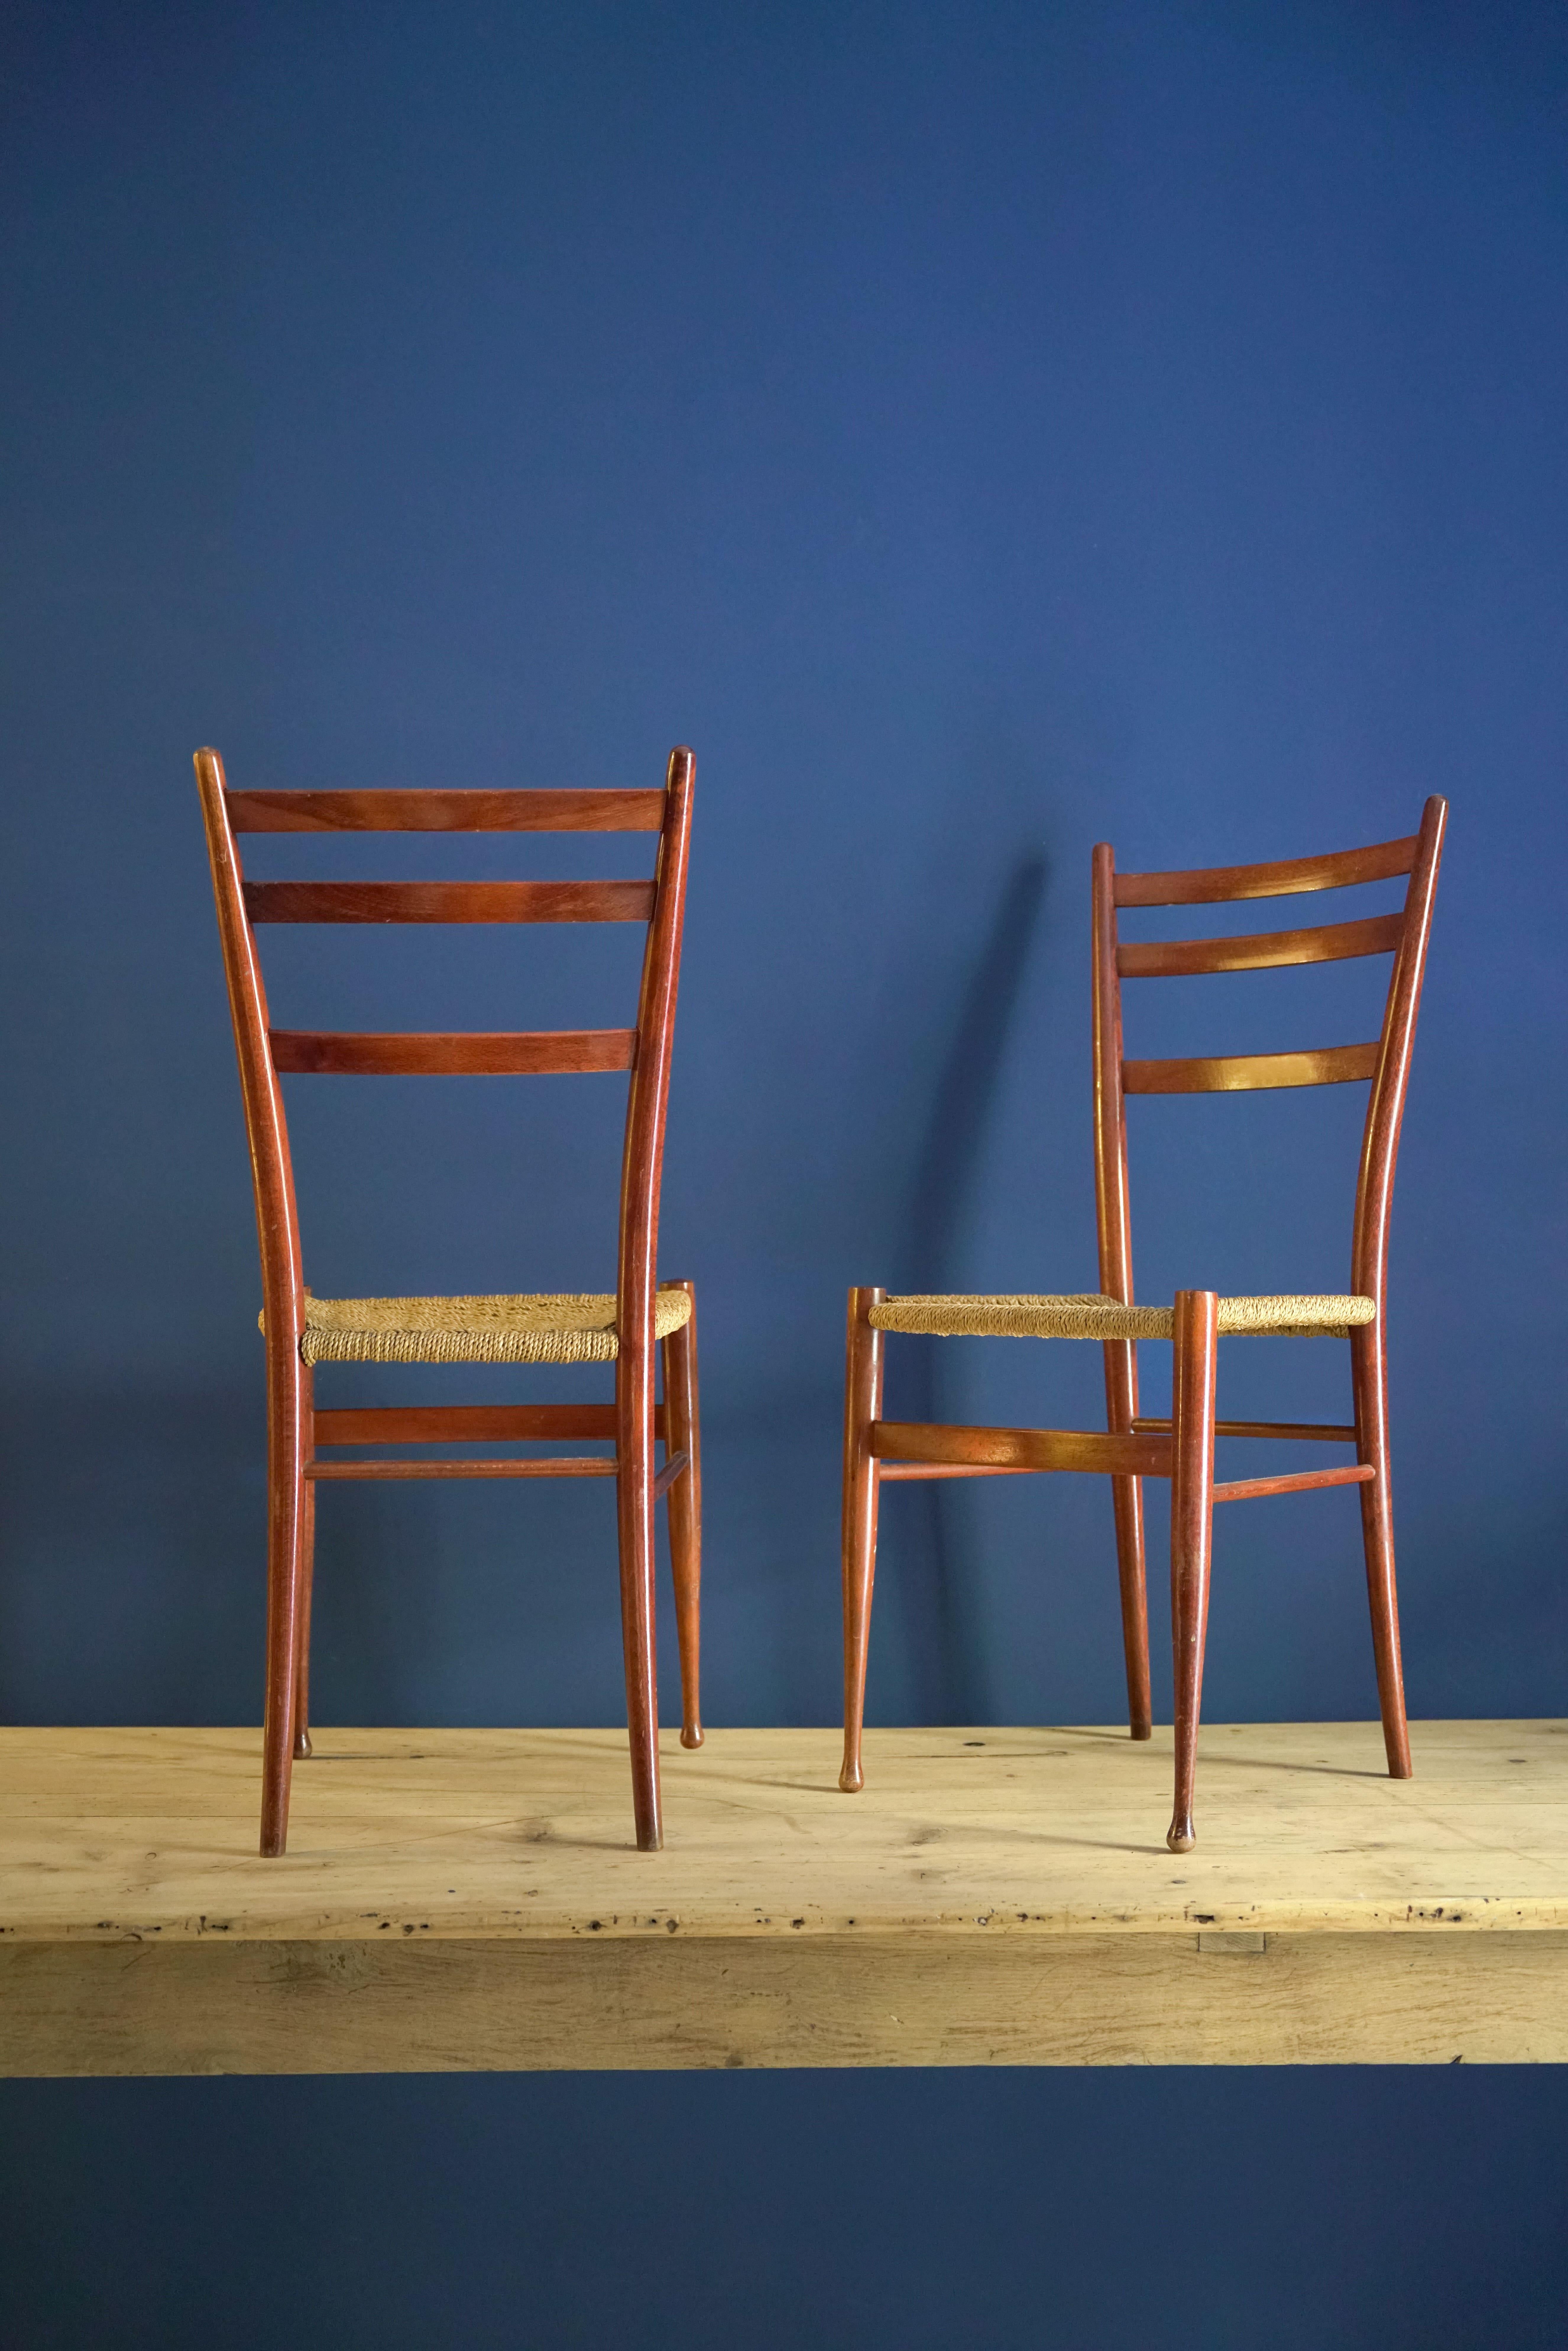  Gio Ponti entwarf diesen Stuhl in den 1950er Jahren im Auftrag von Cassina, einem Unternehmen, das ihn seither kontinuierlich produziert. Siebenundfünfzig Jahre nach seiner Markteinführung ist es vielleicht das bekannteste Werk des